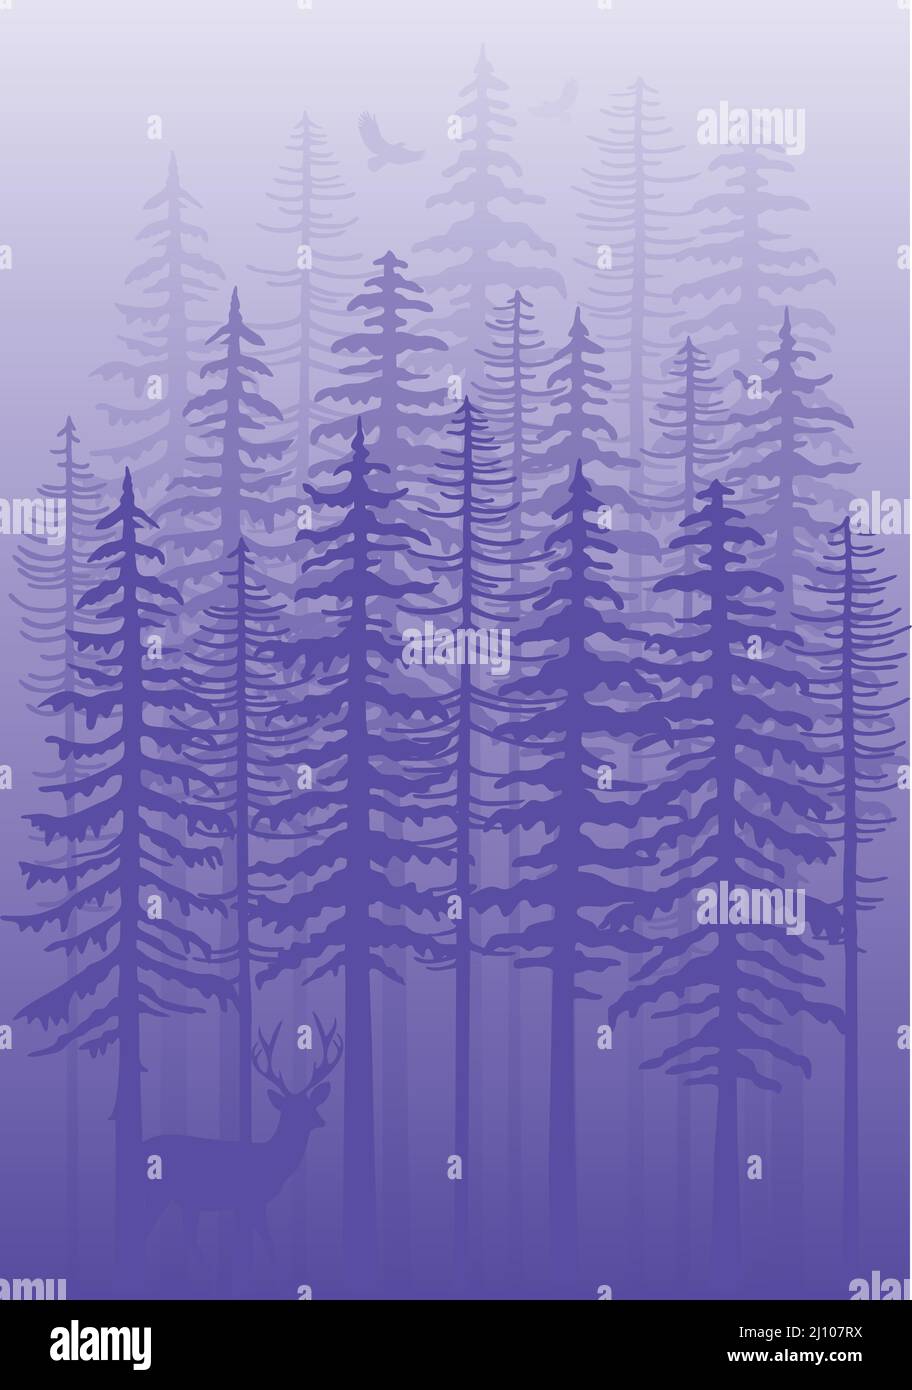 Viola foresta invernale con abeti, cervi e uccelli, molto peri vettore sfondo illustrazione Illustrazione Vettoriale